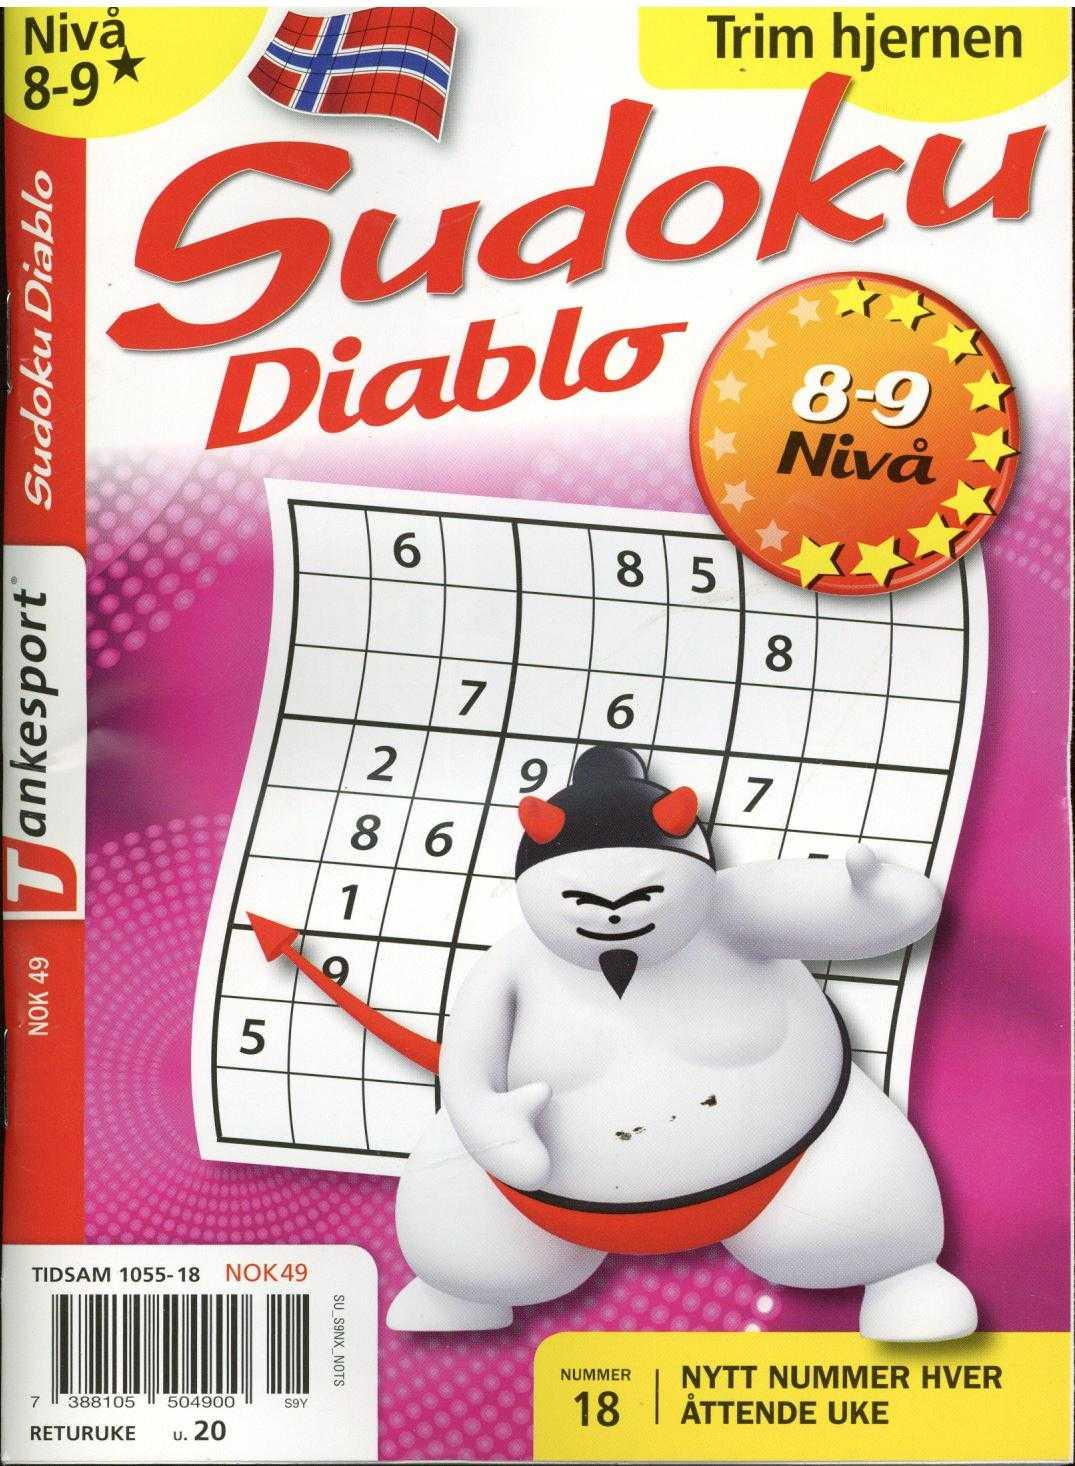 Sudoku Diablo